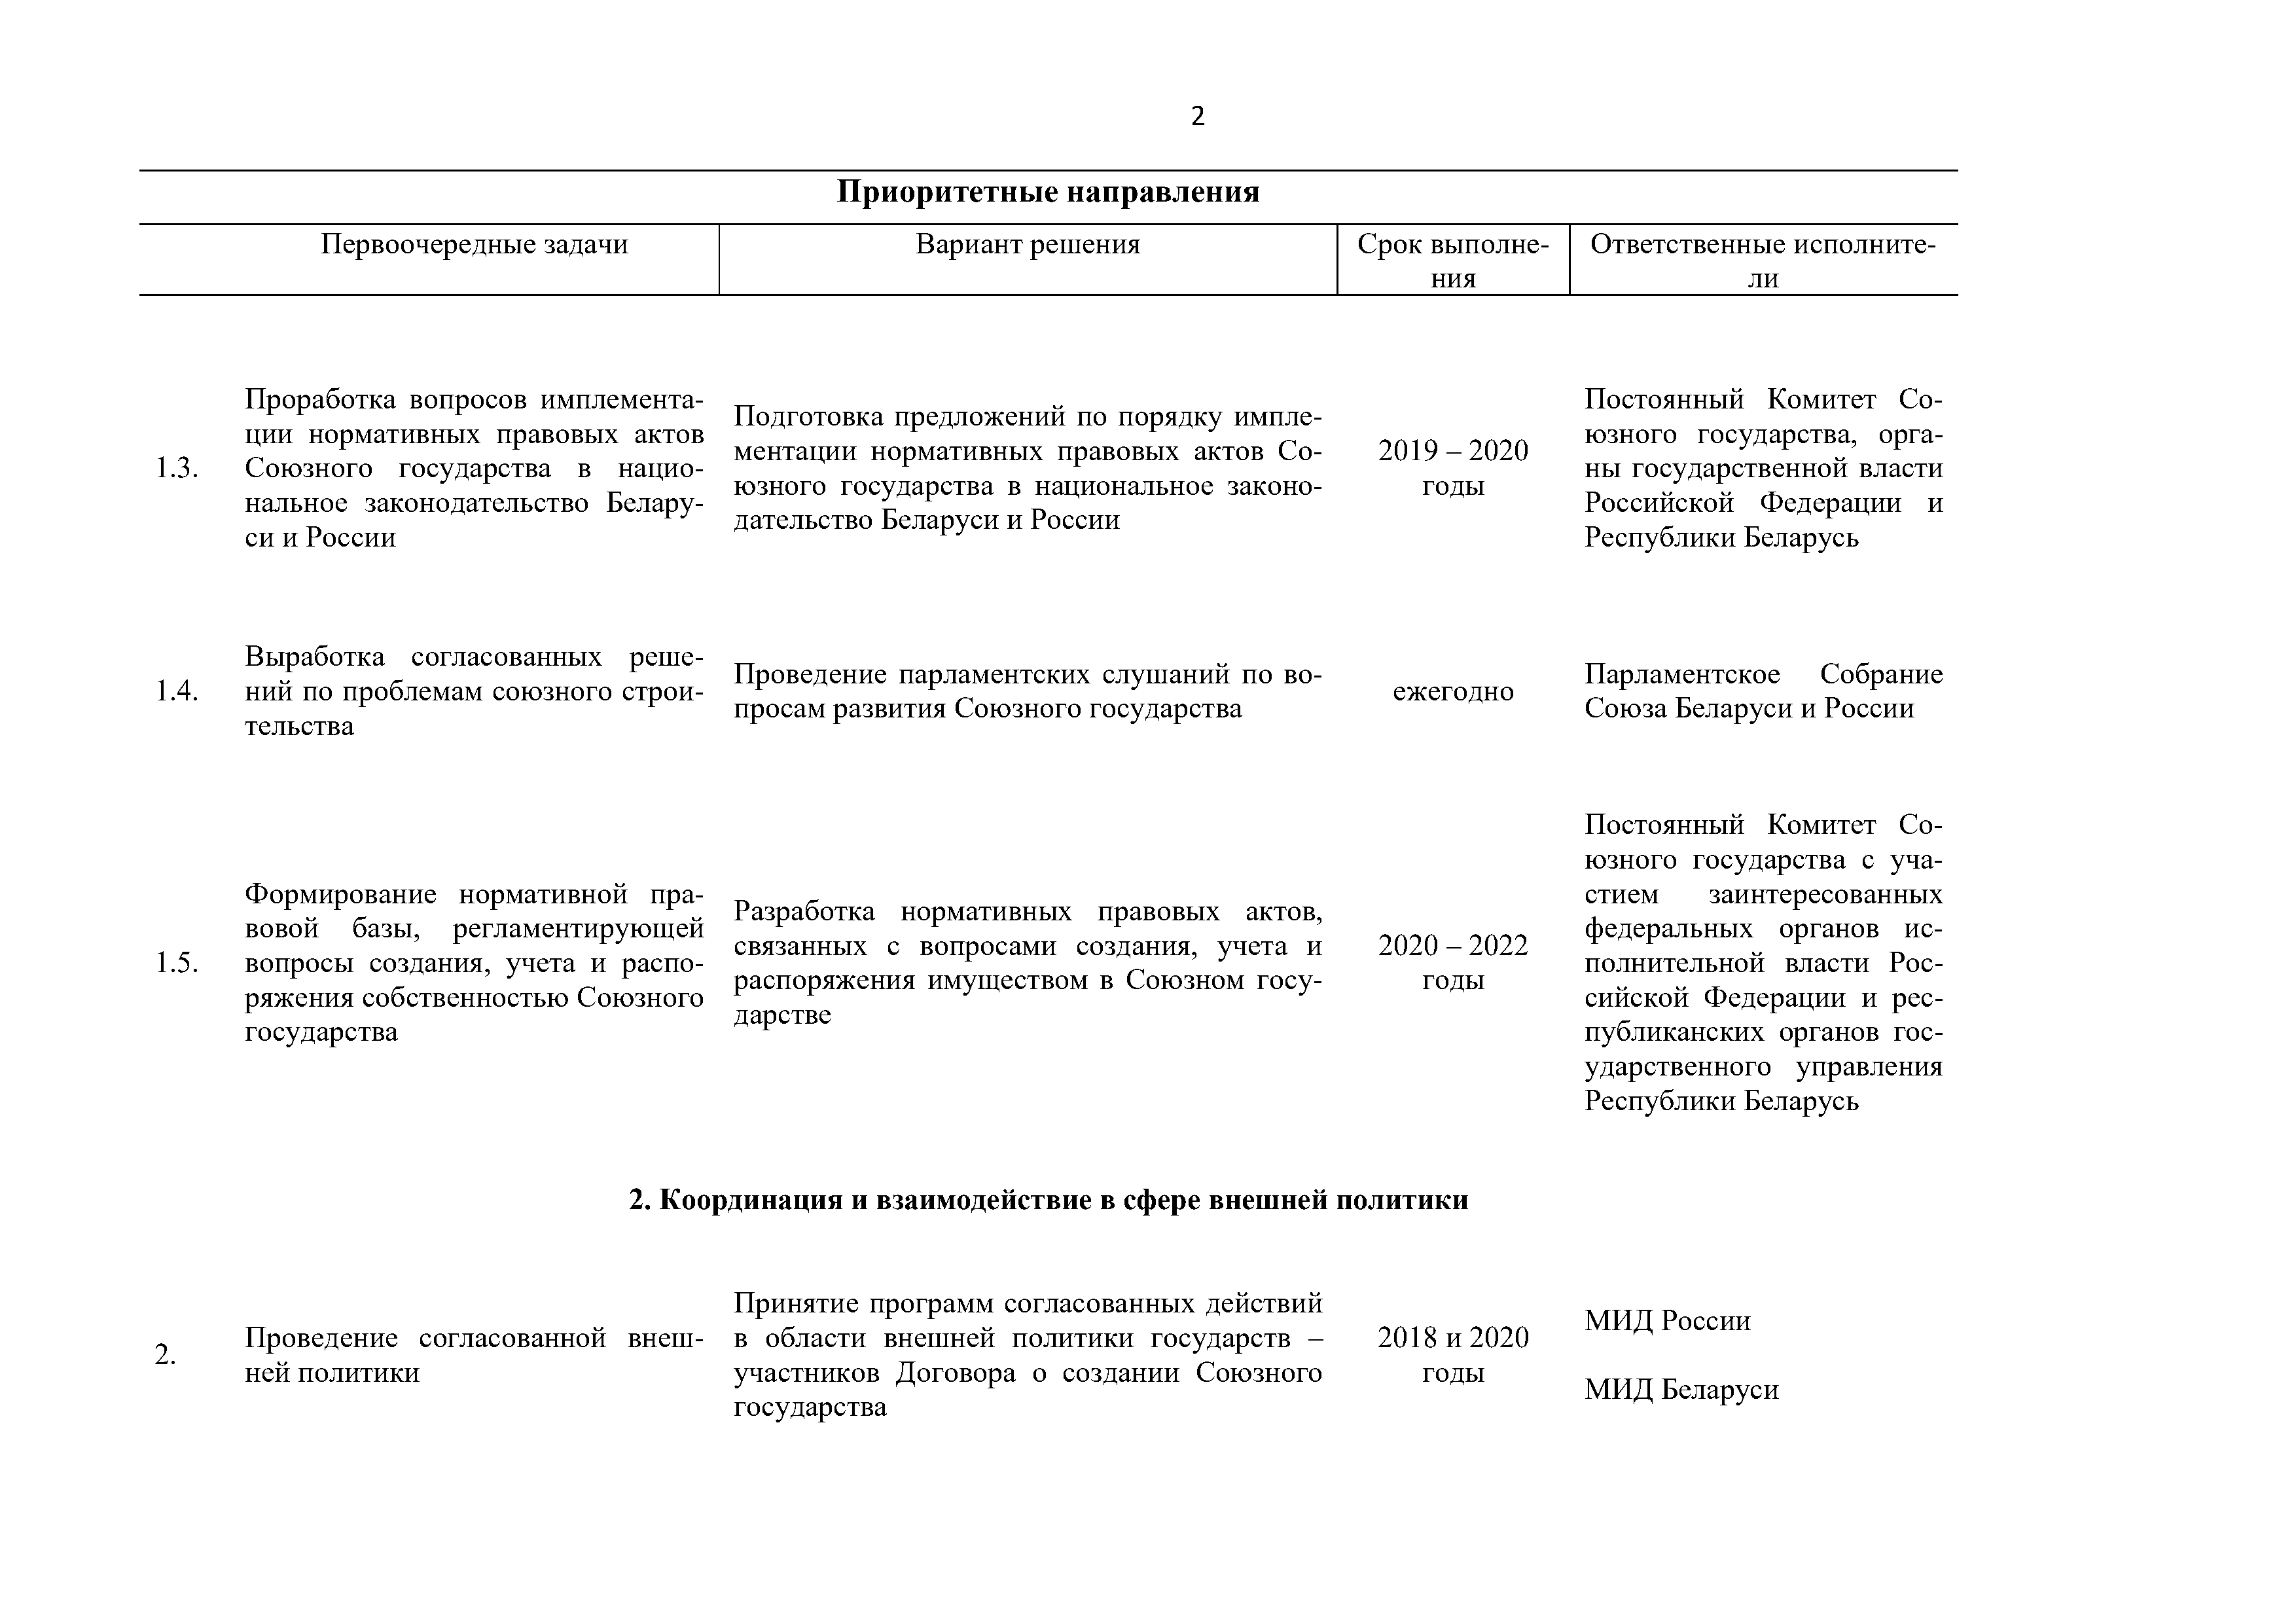 Приоритетные направления и первоочередные задачи развития Союзного государства на 2018 – 2022 г. (Страница 2)